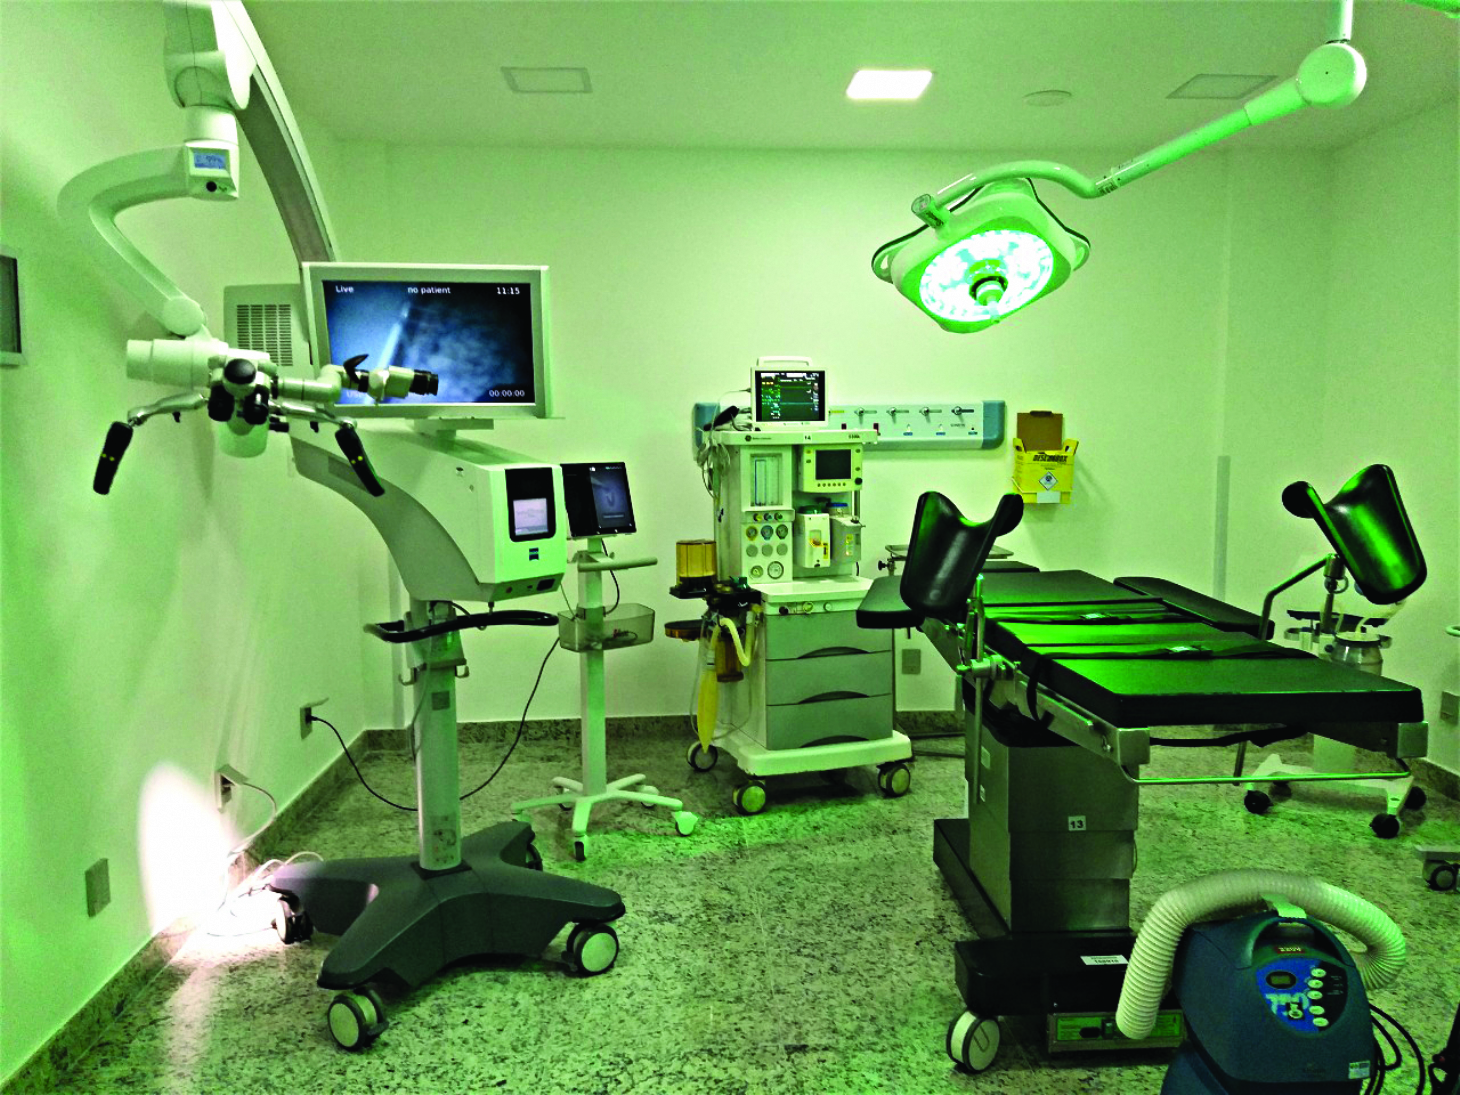 Centro Cirúrgico da Santa Casa ganha recursos inéditos | Jornal da Orla